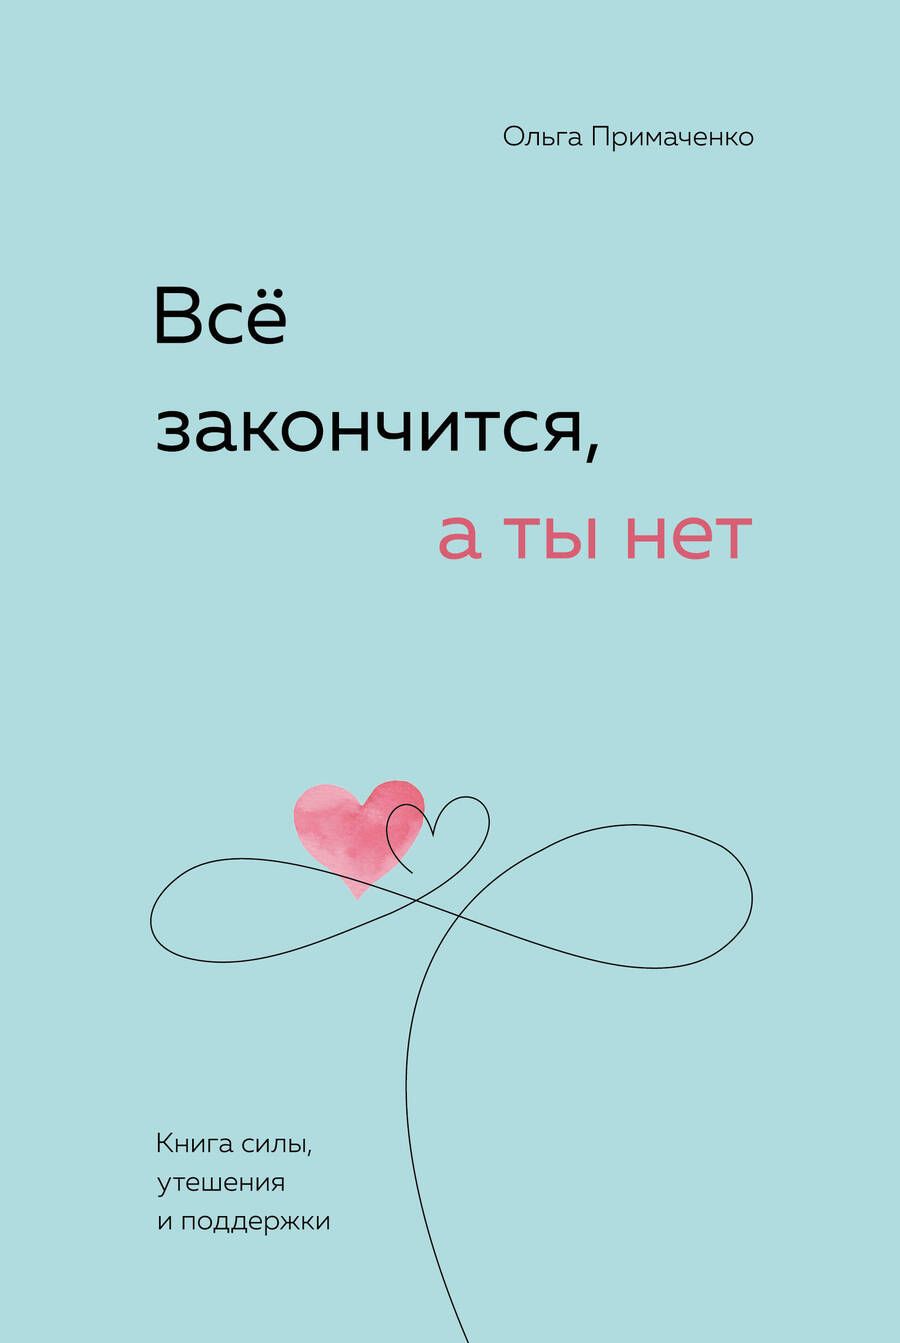 Обложка книги "Примаченко: Все закончится, а ты нет. Книга силы, утешения и поддержки"